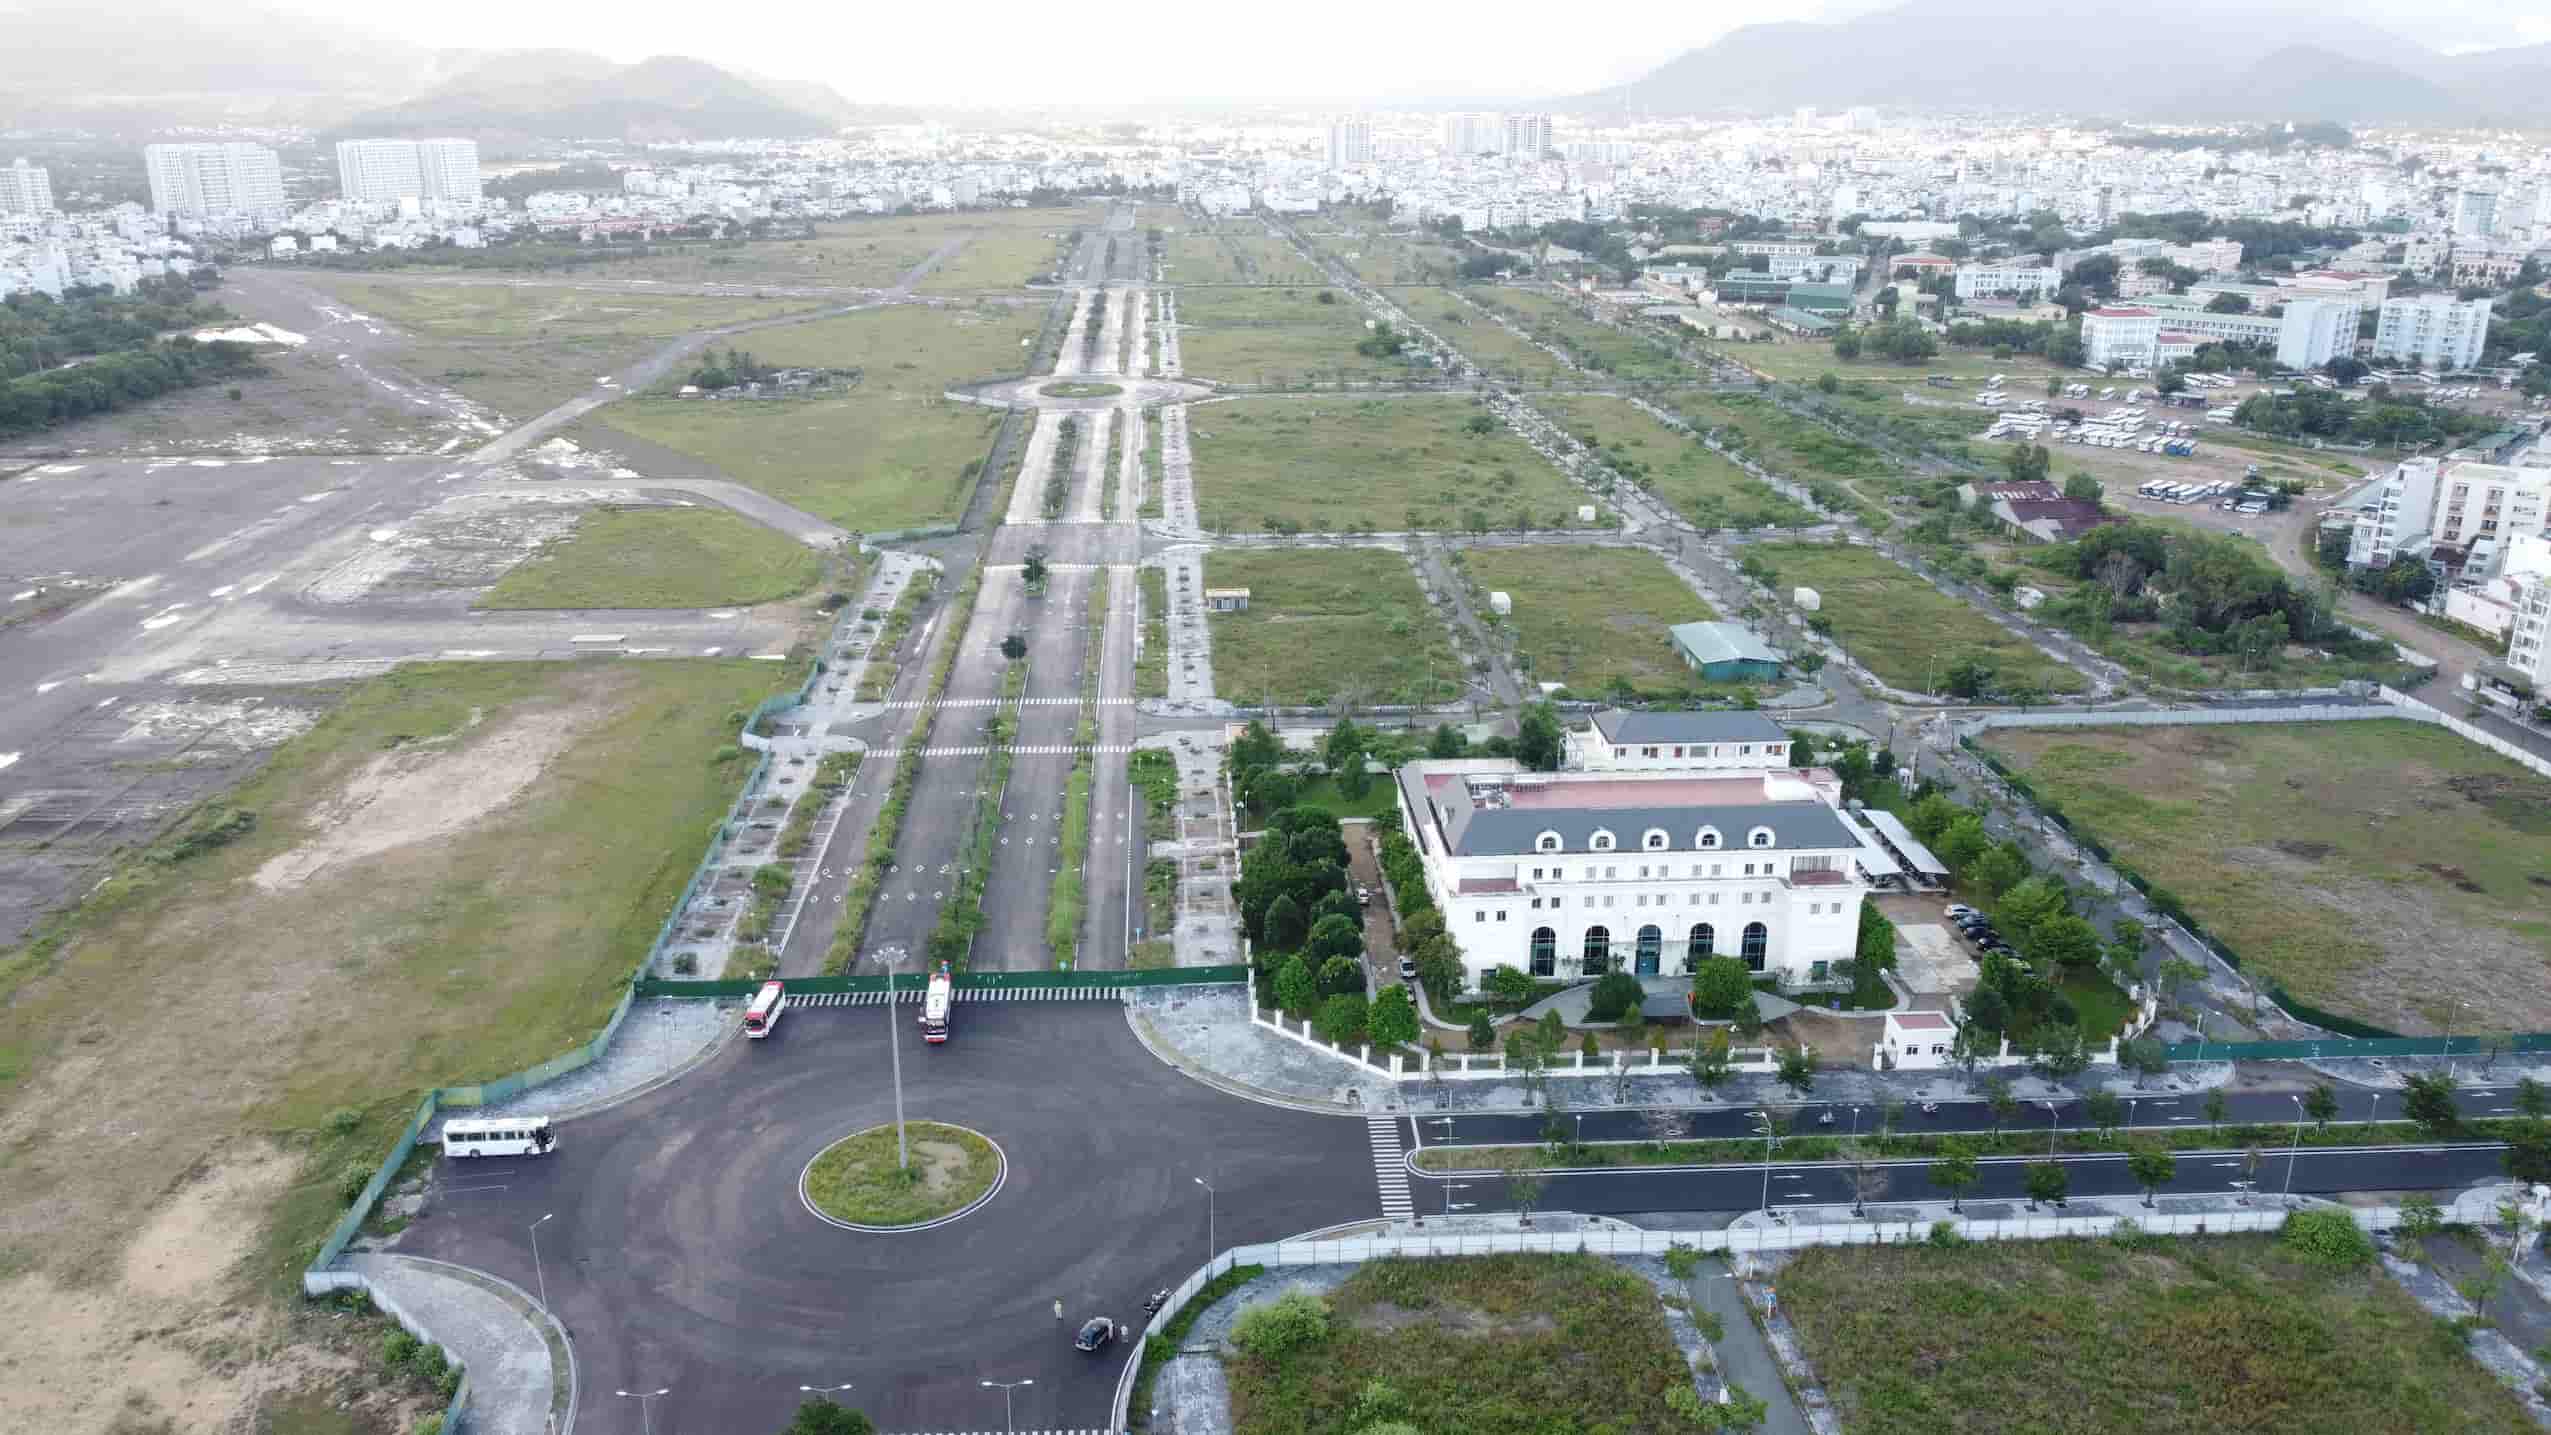  Cơ quan điều tra hình sự Bộ Quốc phòng đang điều tra vụ án hình sự vi phạm các quy định về quản lý đất đai tại Sân bay Nha Trang cũ. Ảnh: Hữu Long